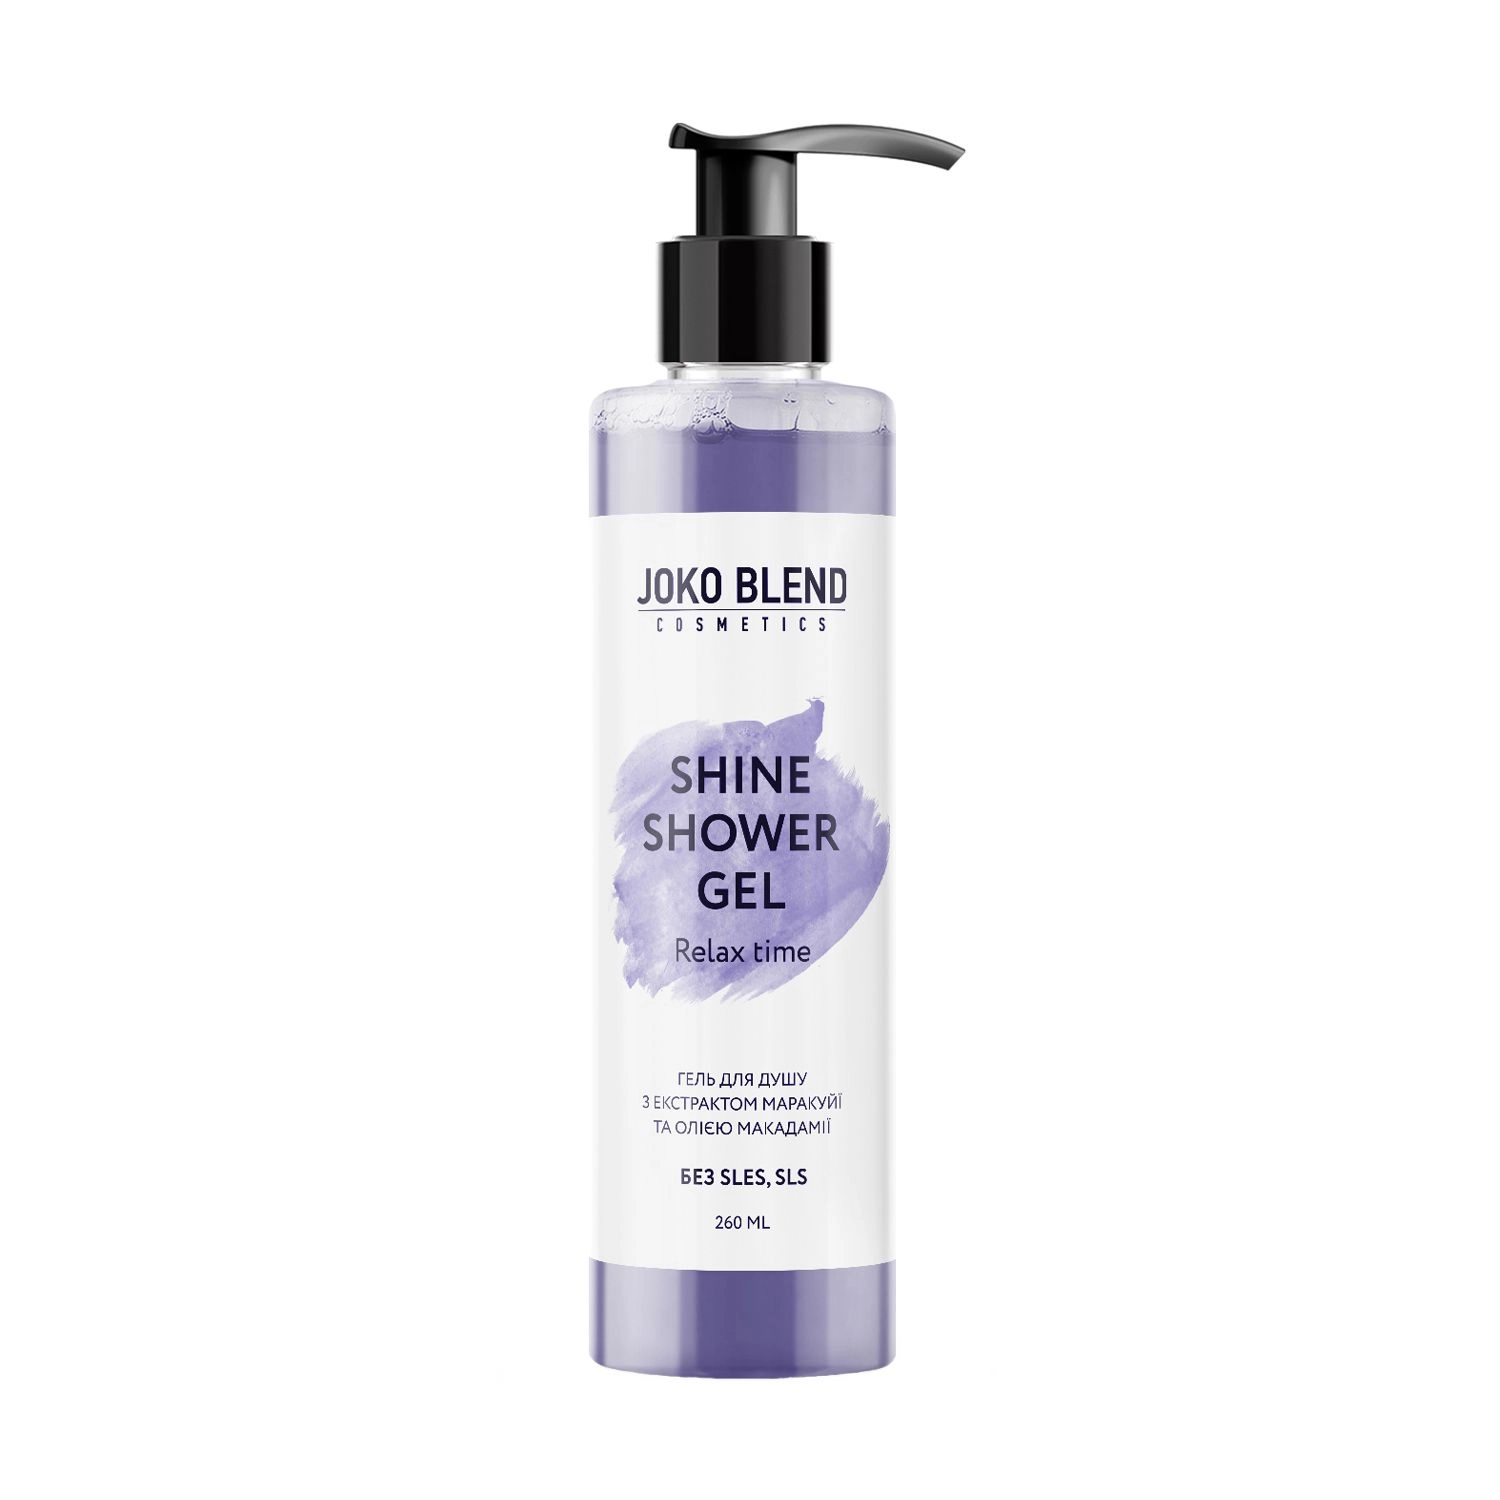 Joko Blend Гель для душа Shine Shower Gel c экстрактом маракуйи и маслом макадамии, 260 мл - фото N1